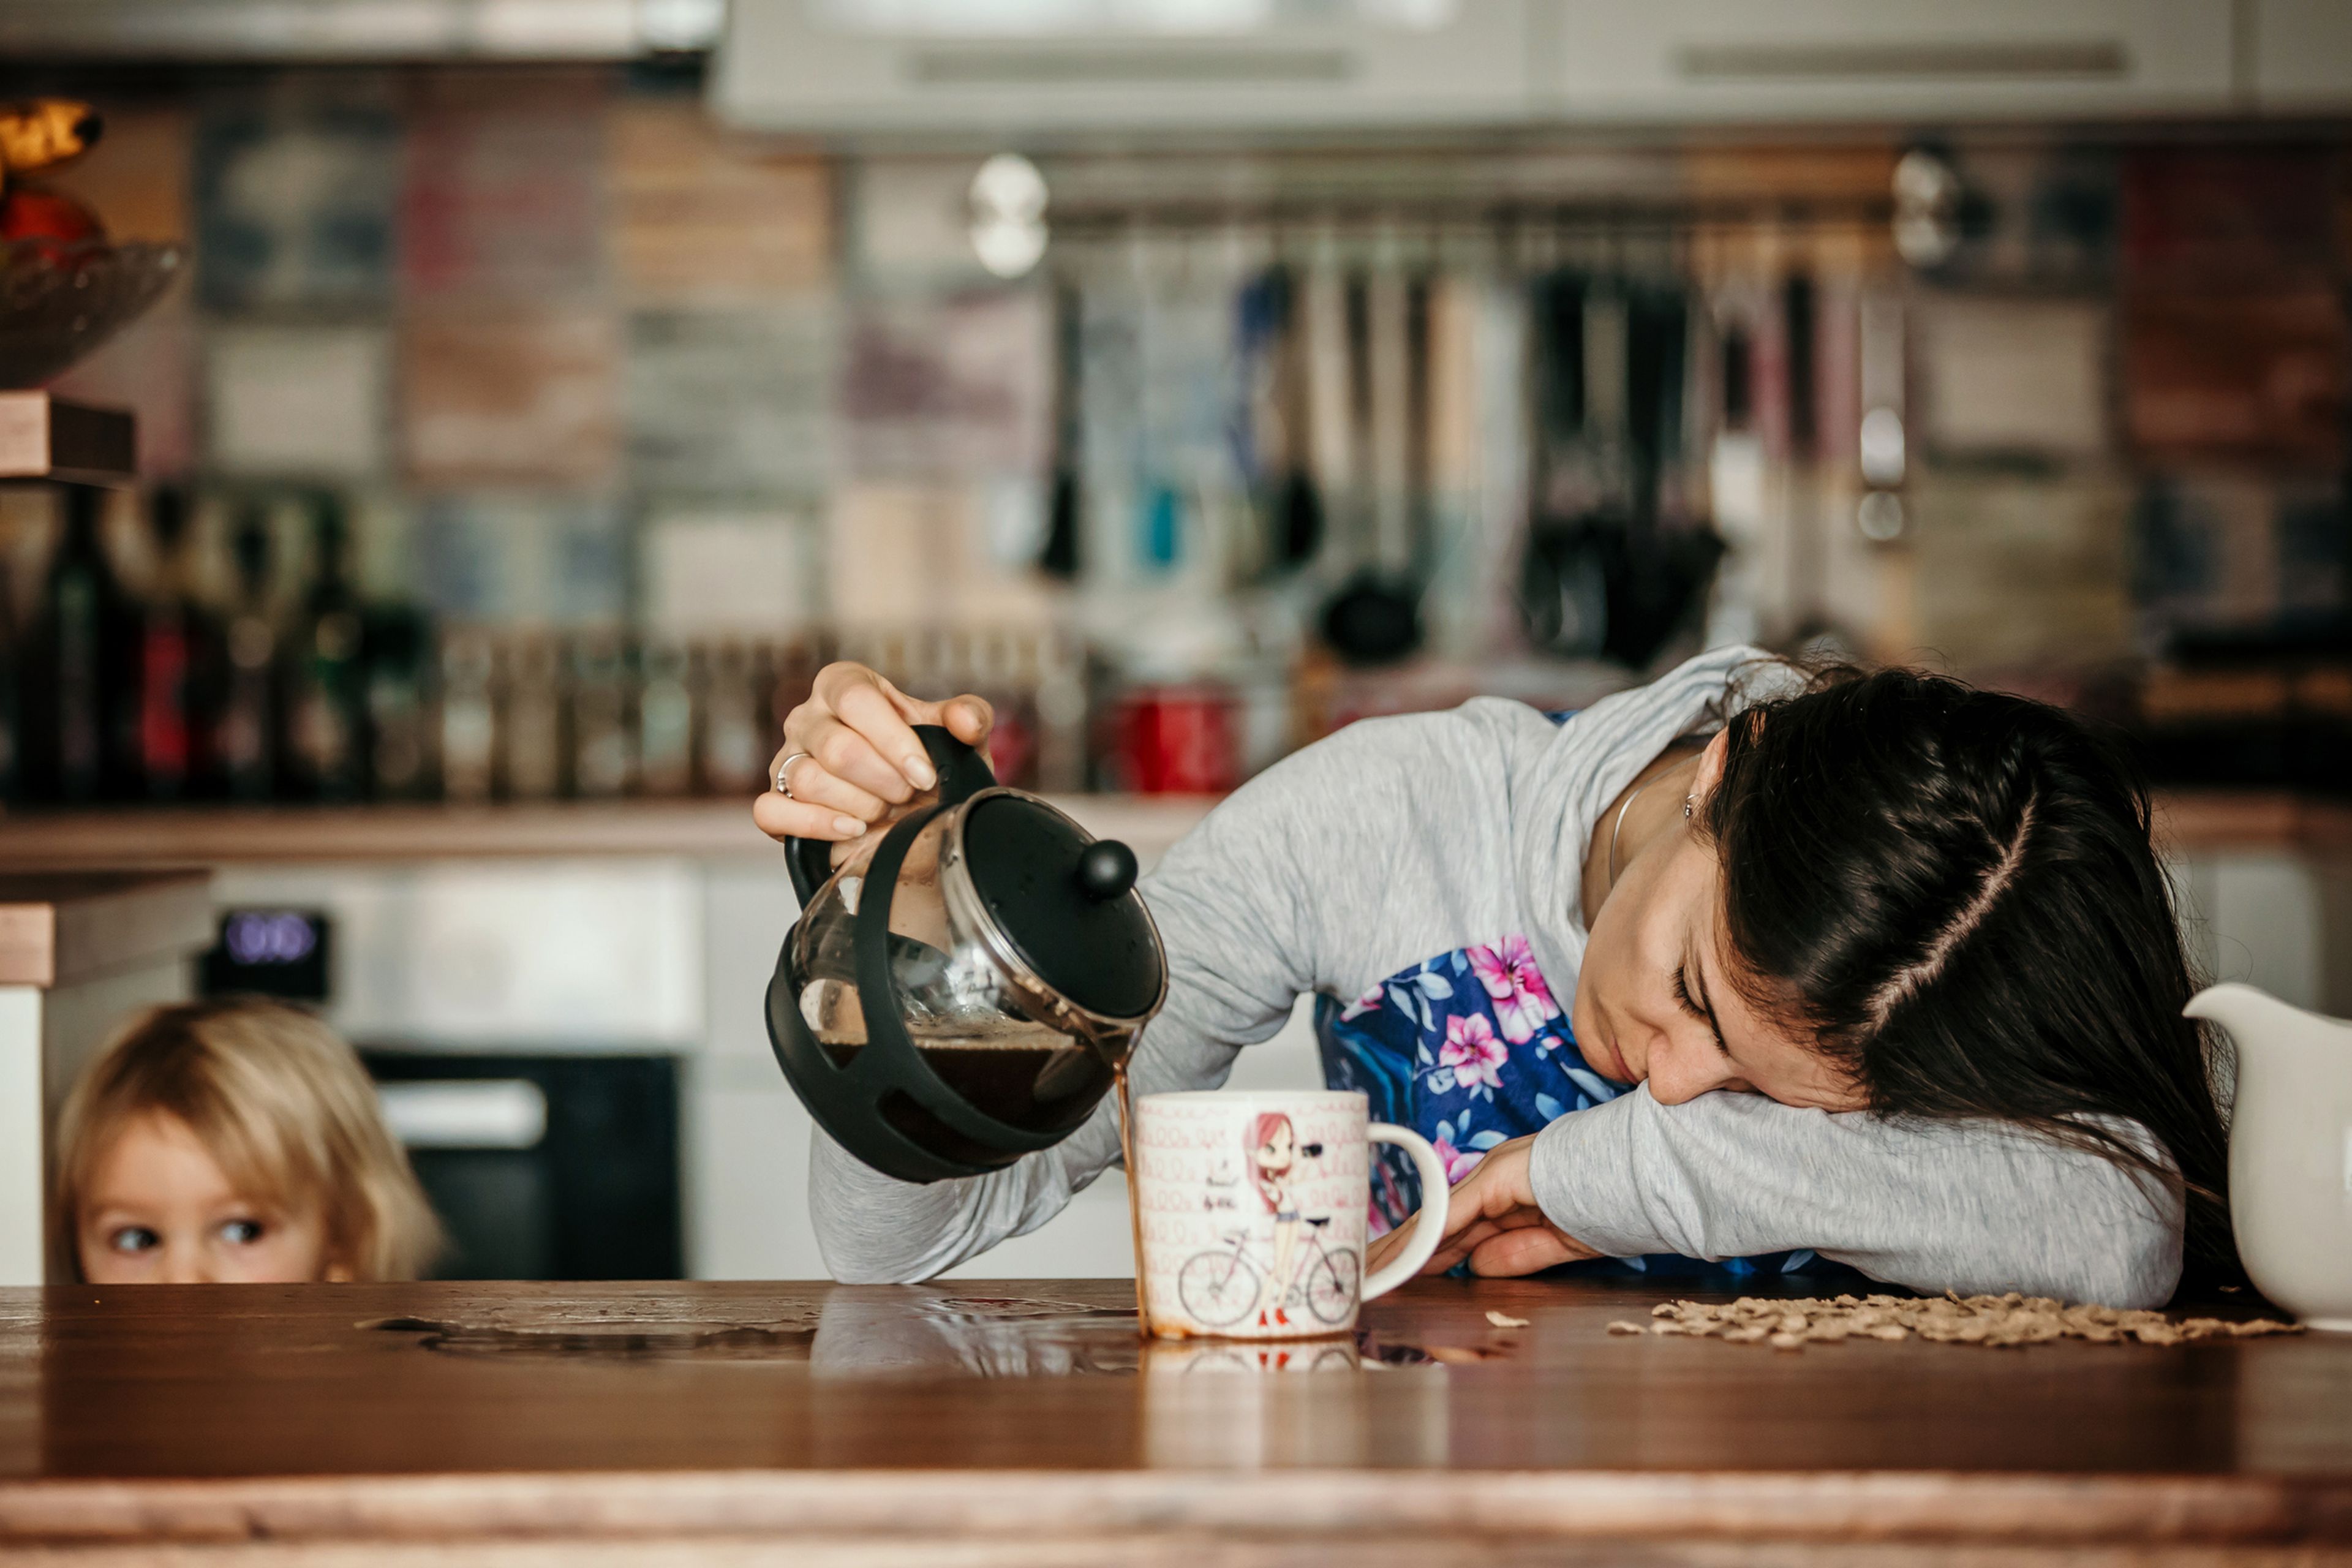 Una mujer se queda dormida mientras sirve el café.